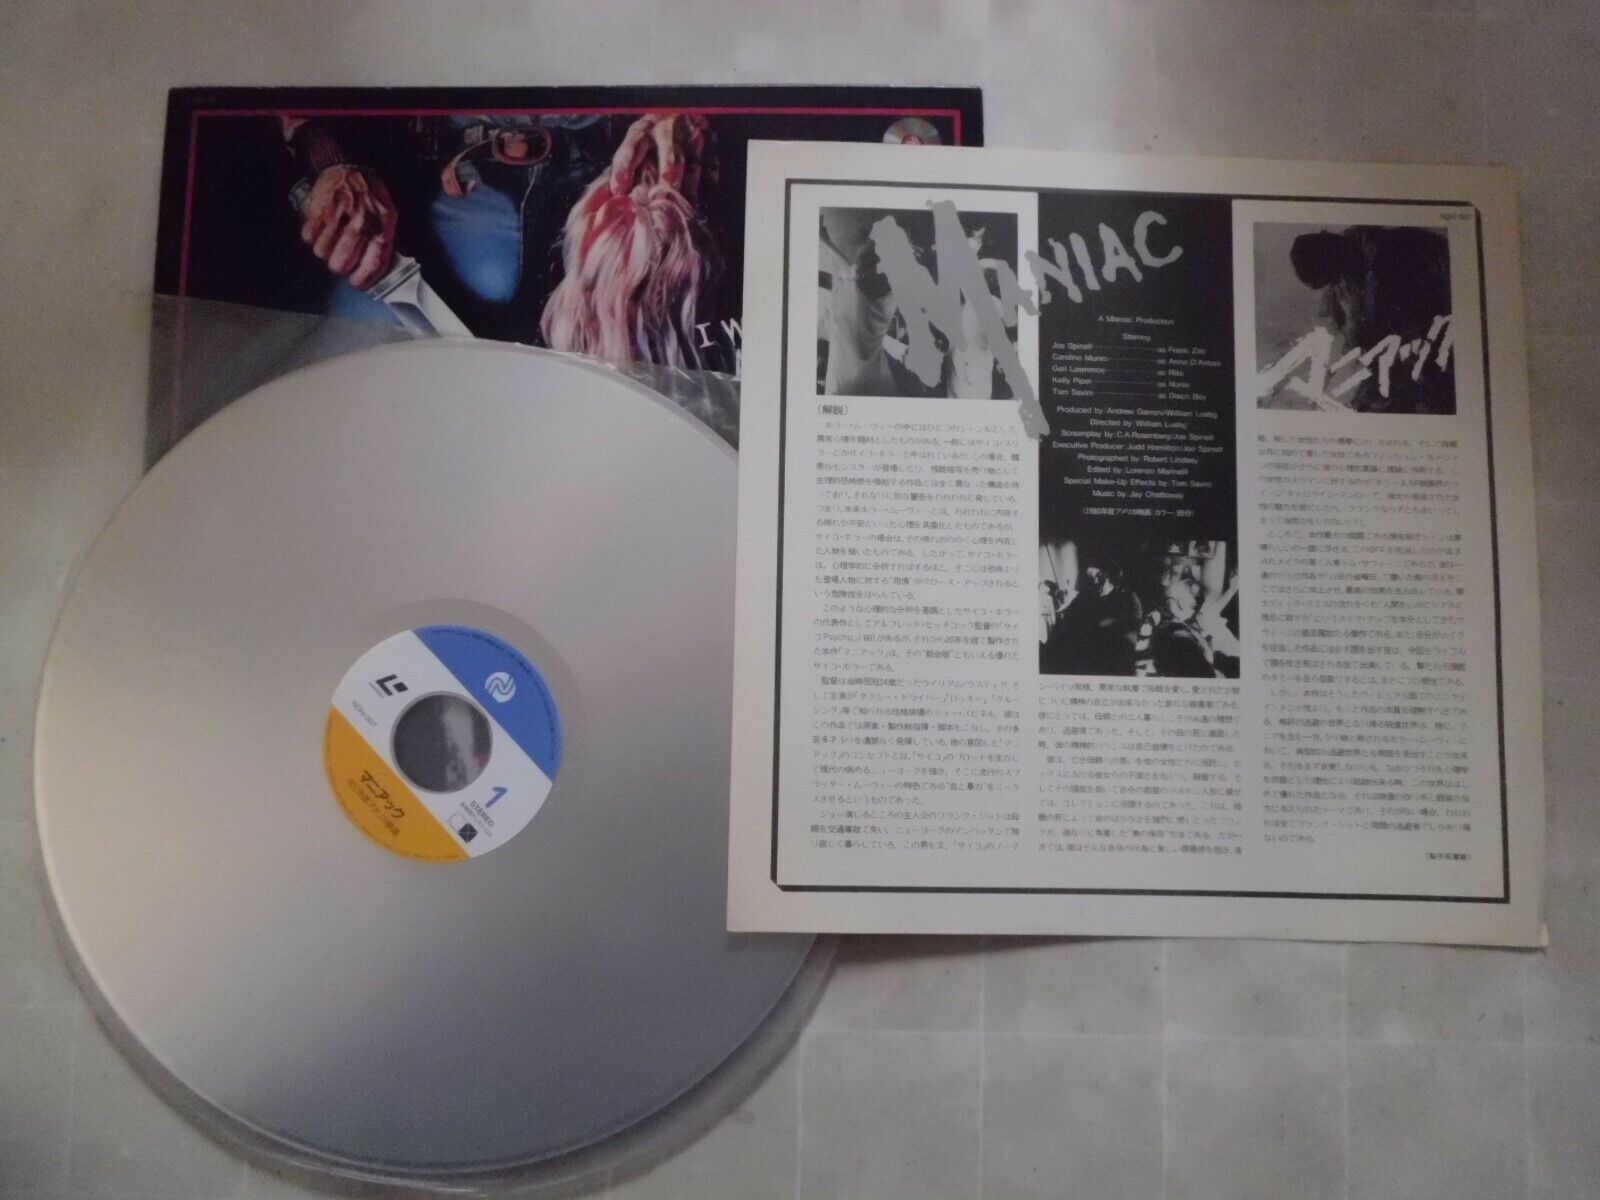 MANIAC William Lustig Joe Spinell JAPAN Laser Disc LD movie Nieuw, klassiek populair